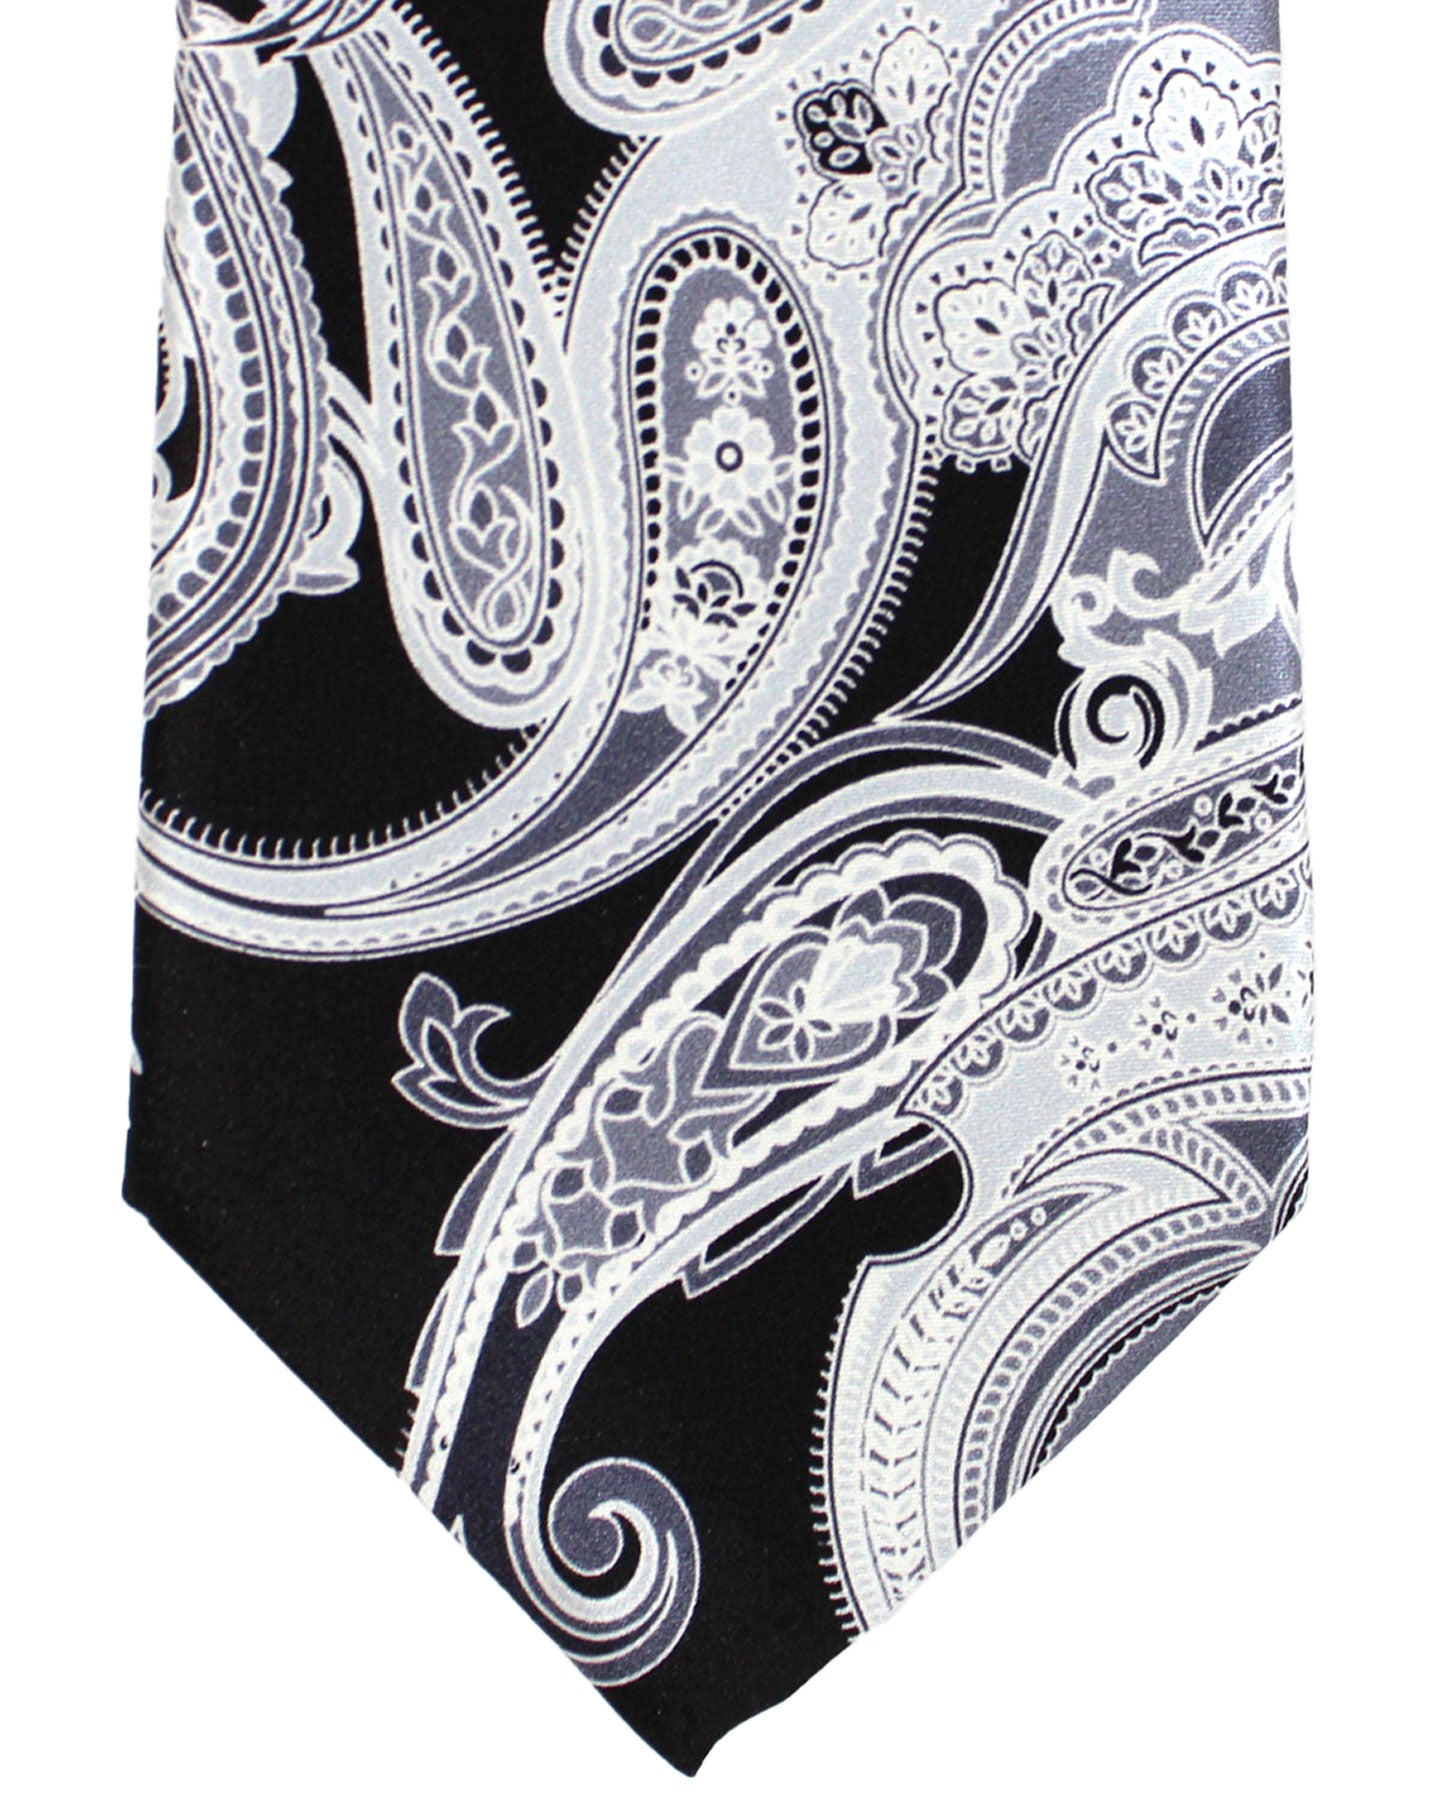 Vitaliano Pancaldi Silk Tie Black Gray Paisley Design